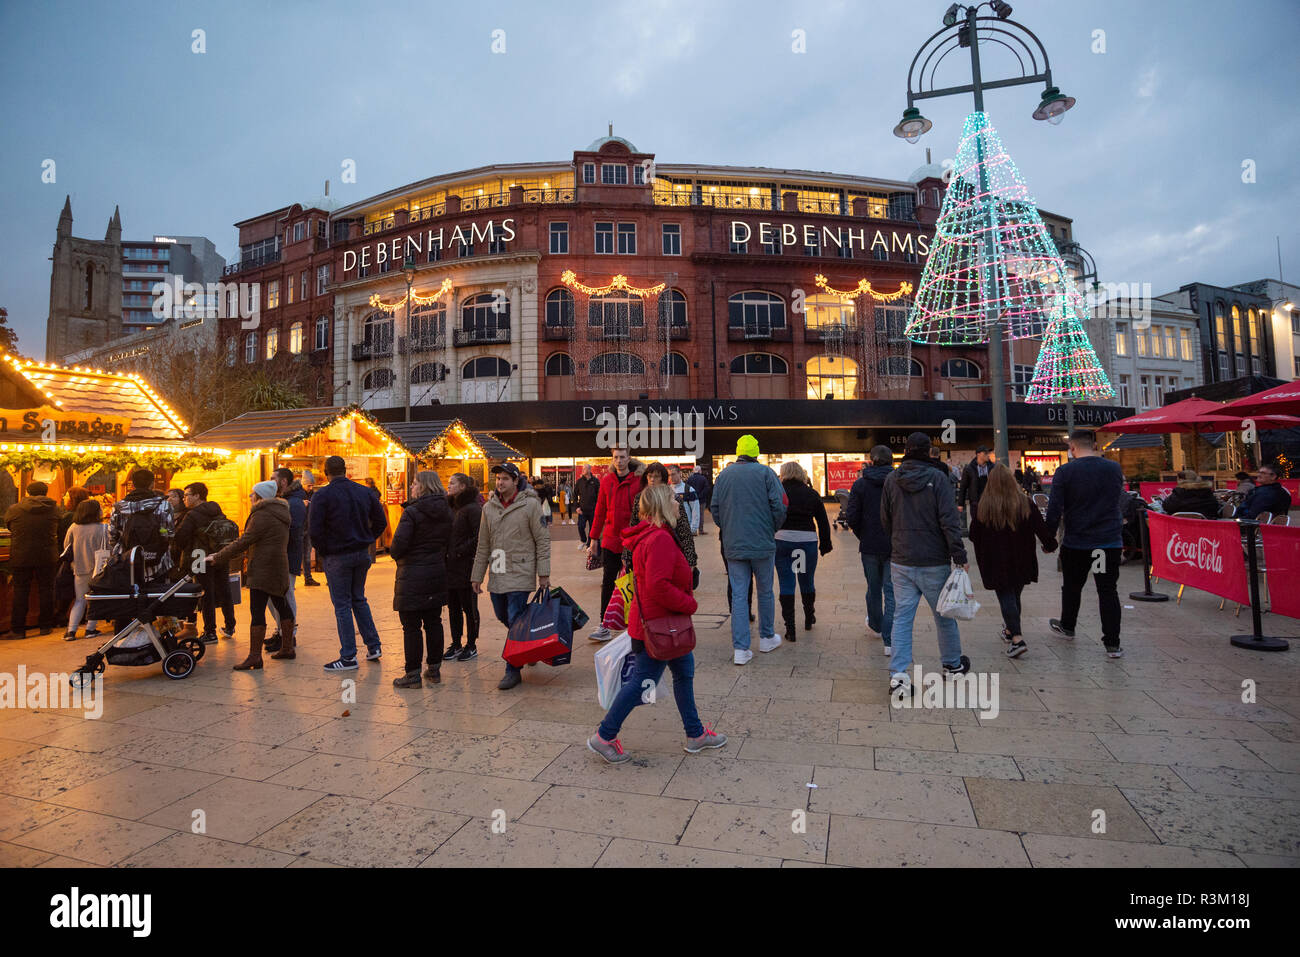 Gli acquirenti del Black Friday nella piazza fuori dal grande magazzino Debenhams, con un mercatino di Natale e una scena festosa nel centro commerciale della città, Bournemouth, Dorset, Inghilterra, Regno Unito, Novembre 2018. Foto Stock